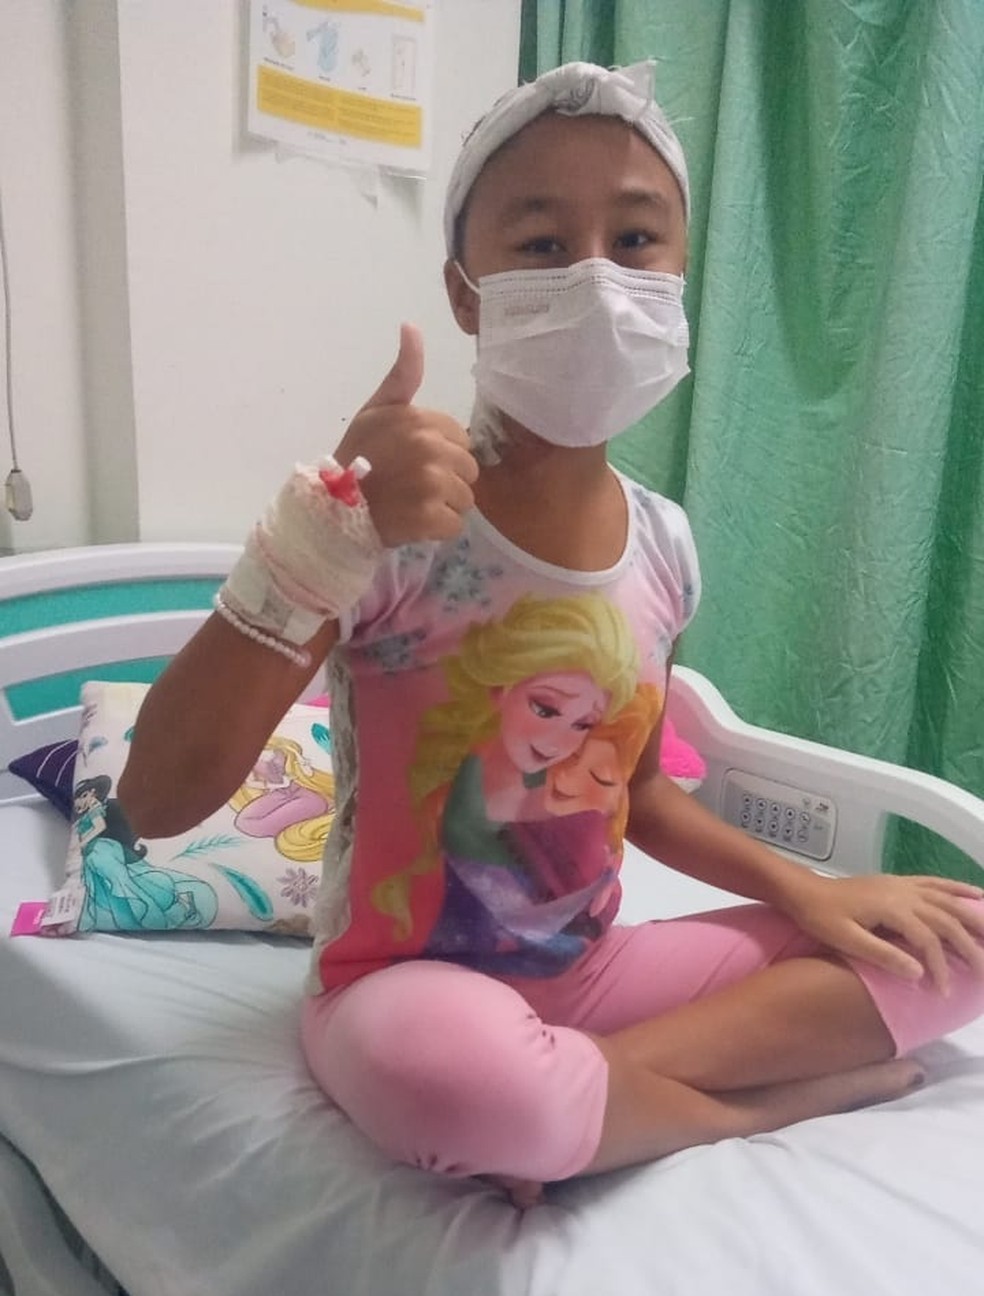 Menina de 12 anos fica sem andar após contrair infecção em banheira